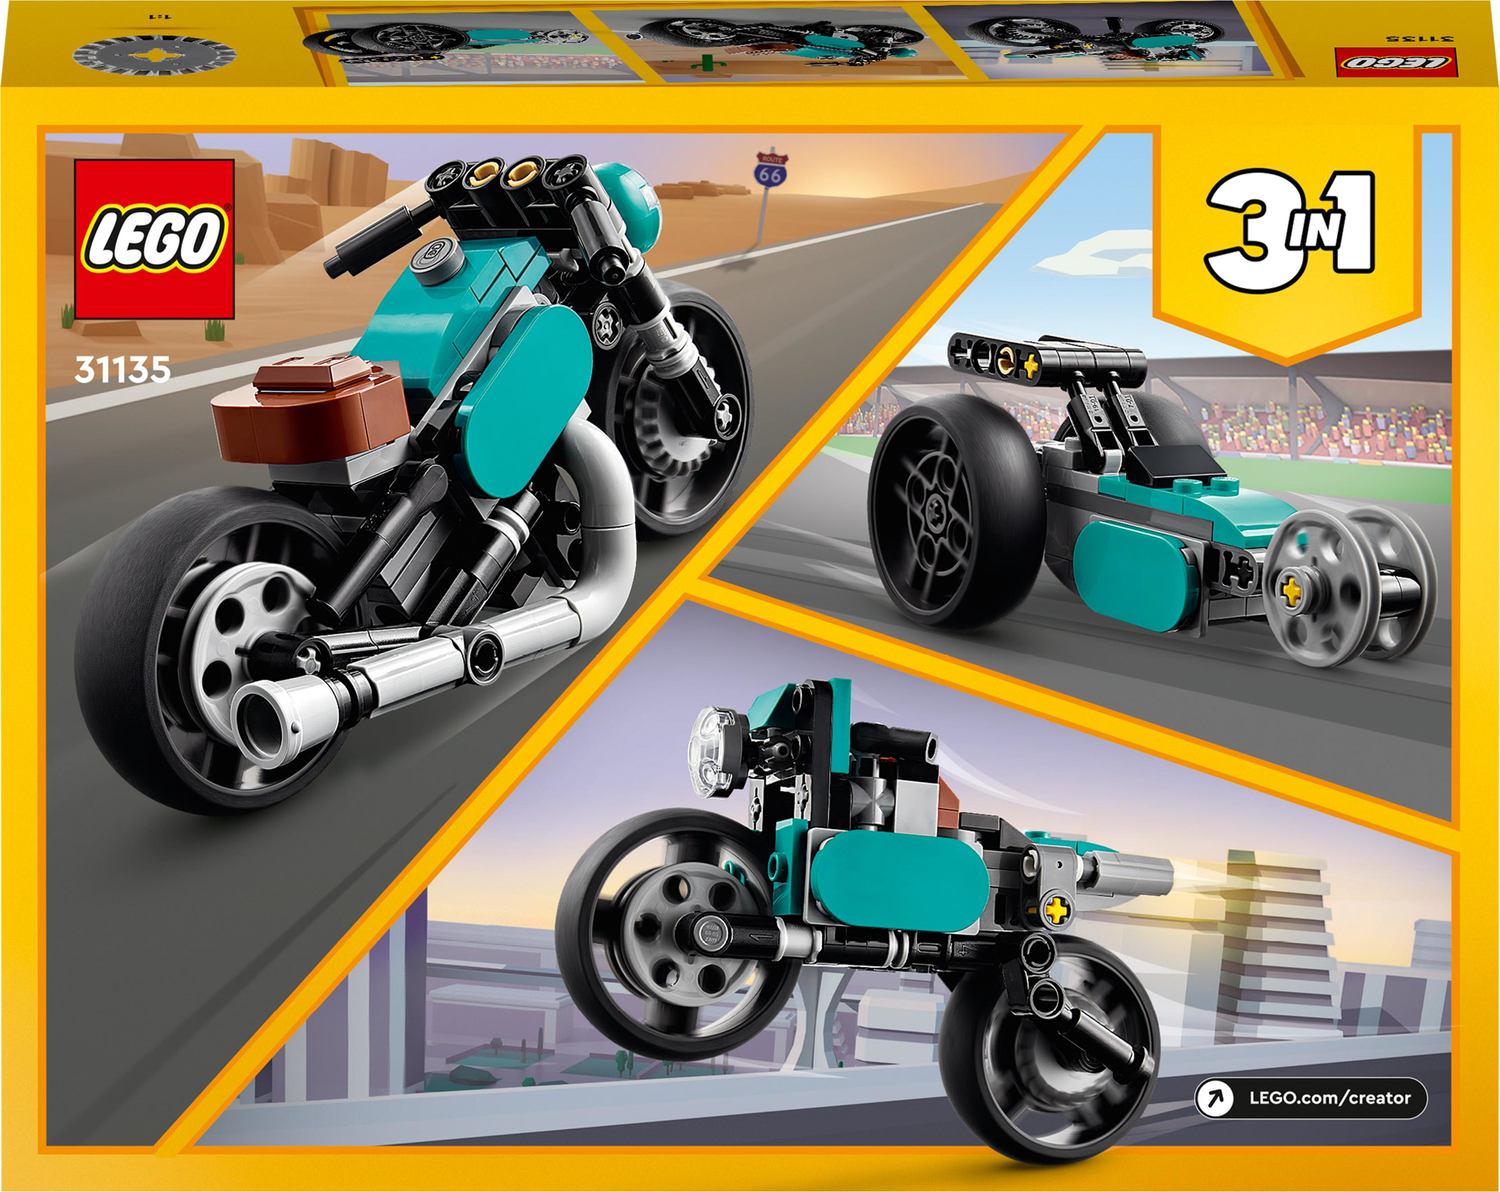 LEGO IDEAS - Supermoto/Dirt Bike